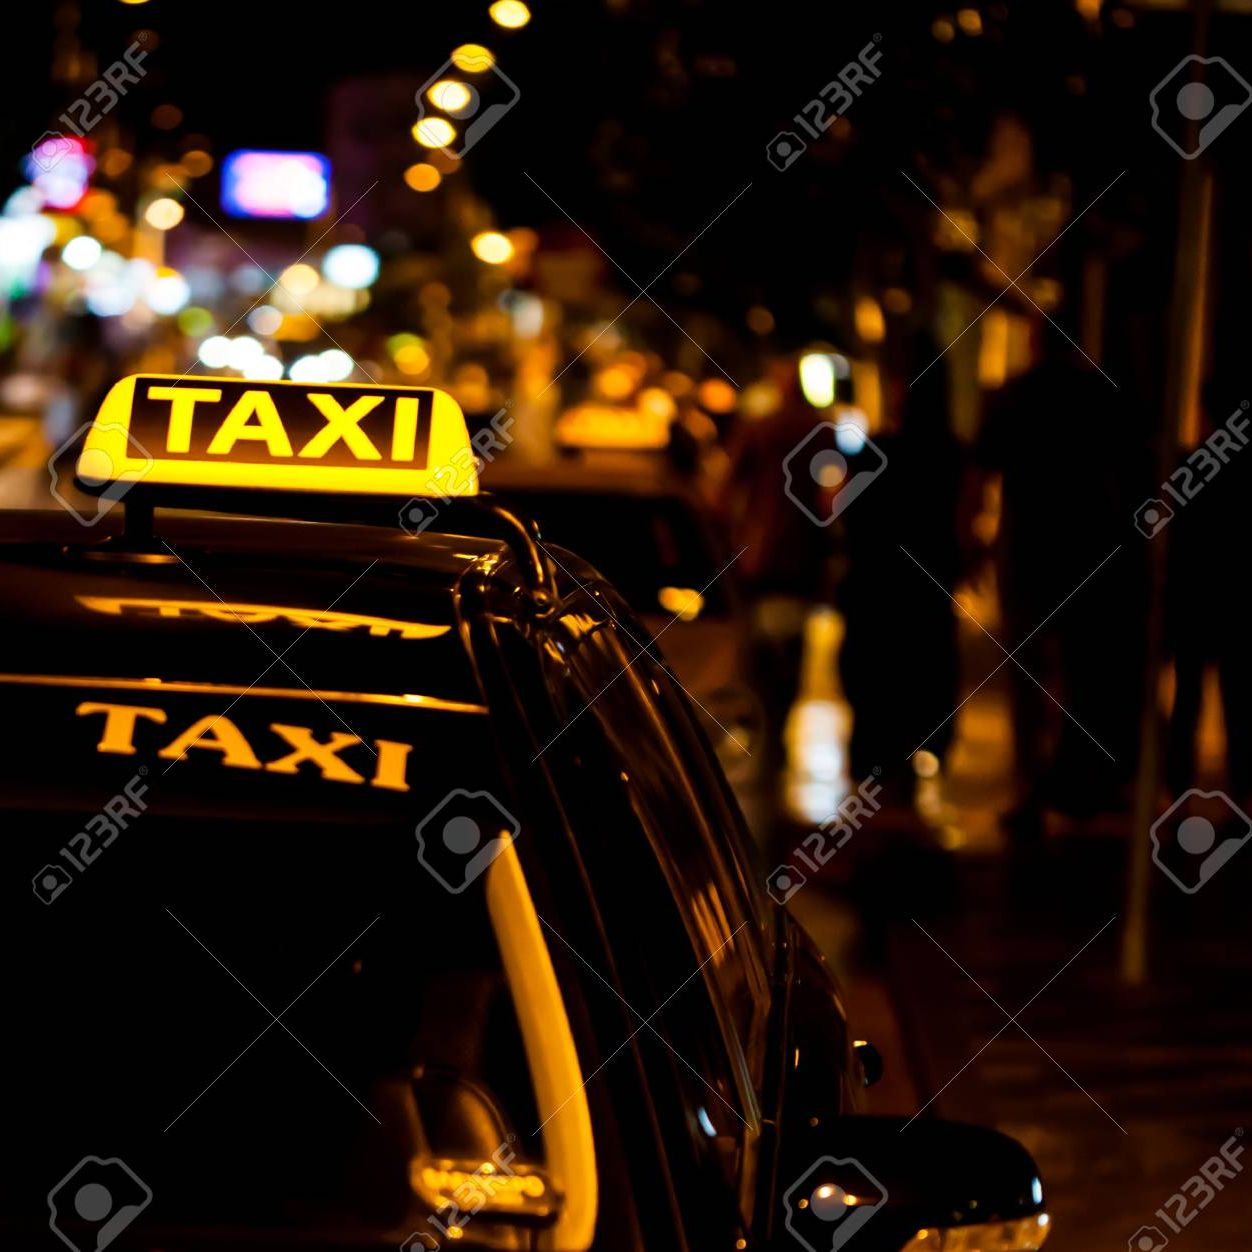 Corporate Taxi Service'